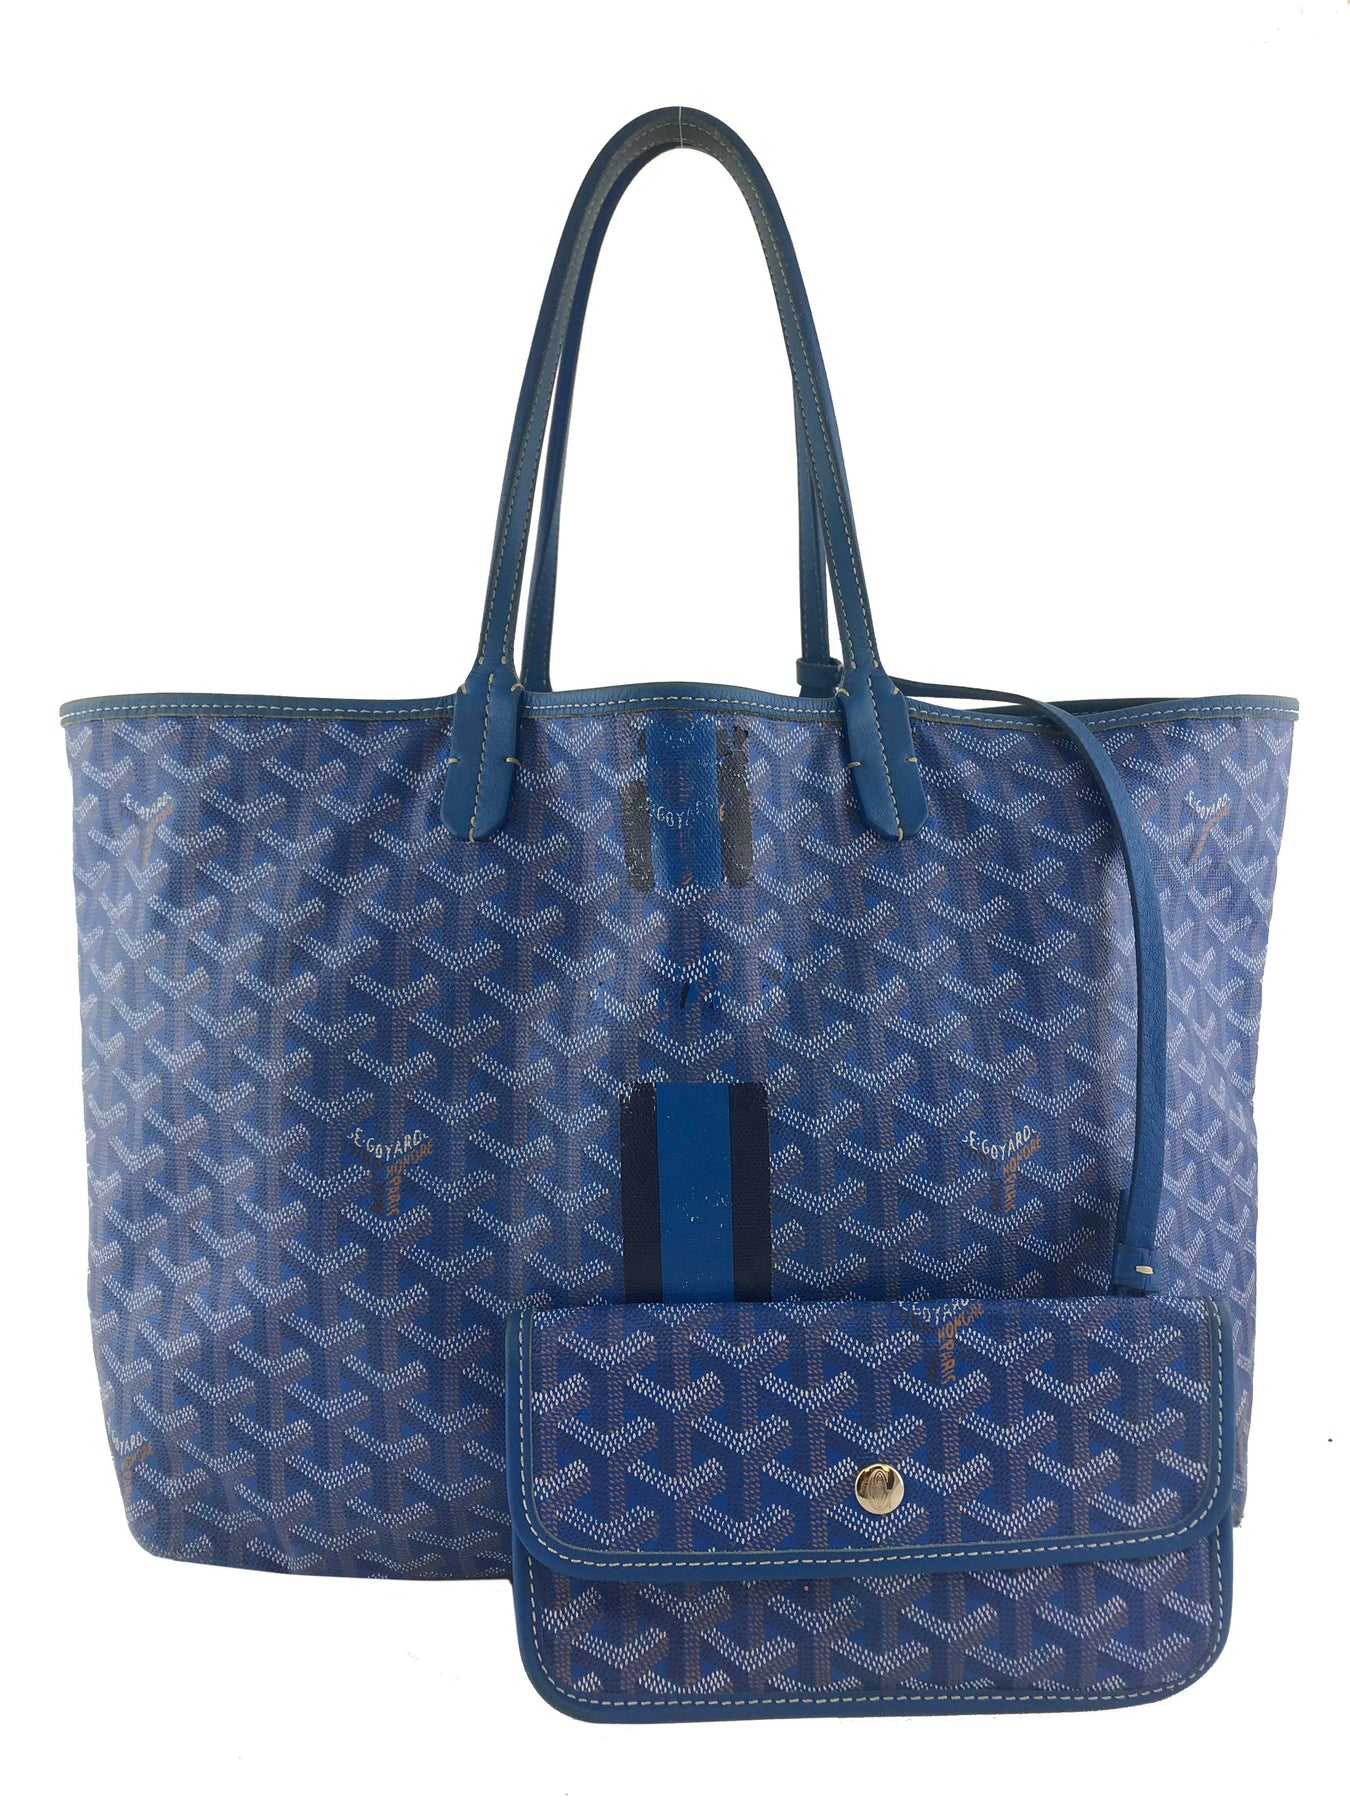 Brandnew Authentic Goyard Saint Louis Tote Blue Shoulder Bag